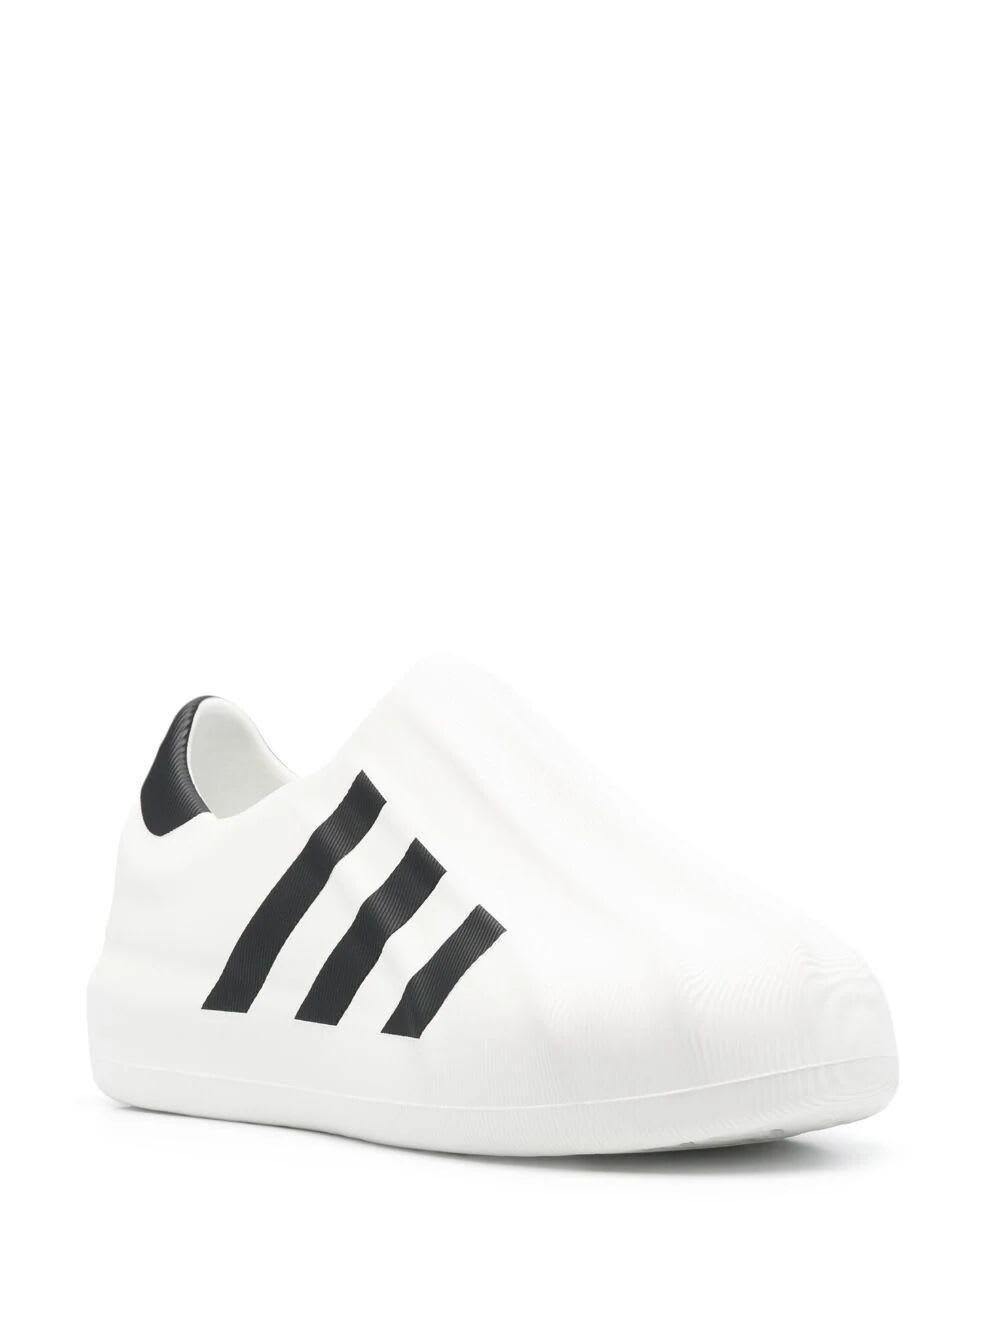 Shop Adidas Originals Adifom Superstar Sneakers In Cwhite Cblack Cblack